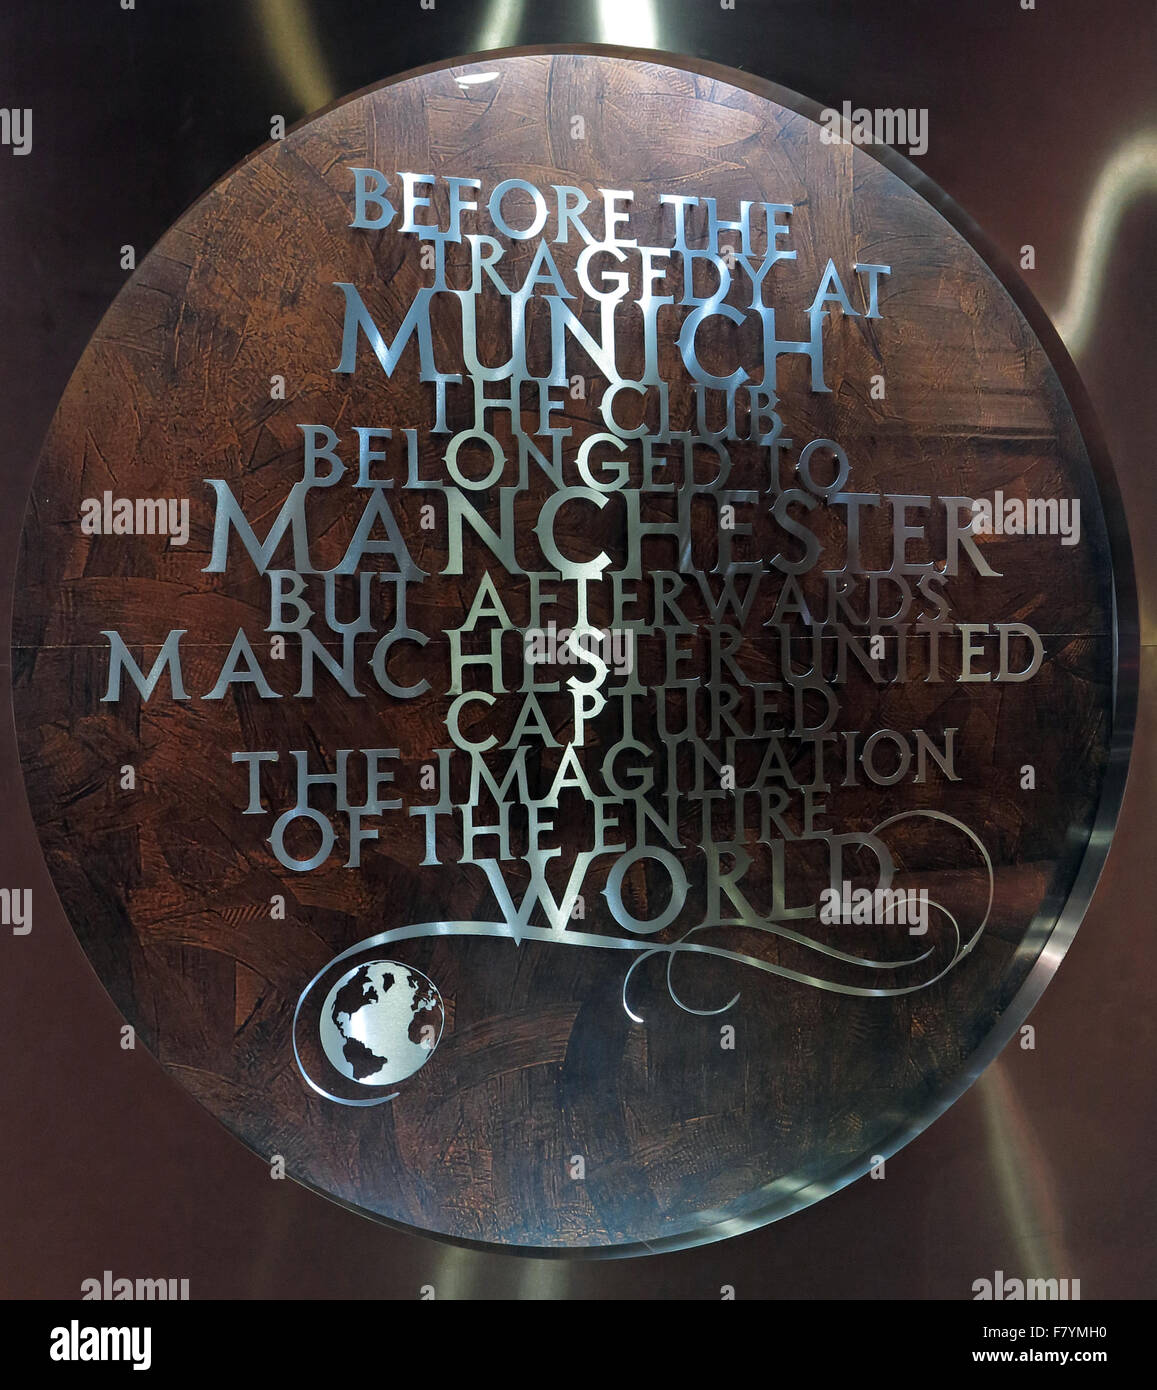 MUFC,Munich,memorial Old Trafford, Manchester United,Angleterre,UK. 'Avant la tragédie de Munich, le club appartenait à Manchester' Banque D'Images